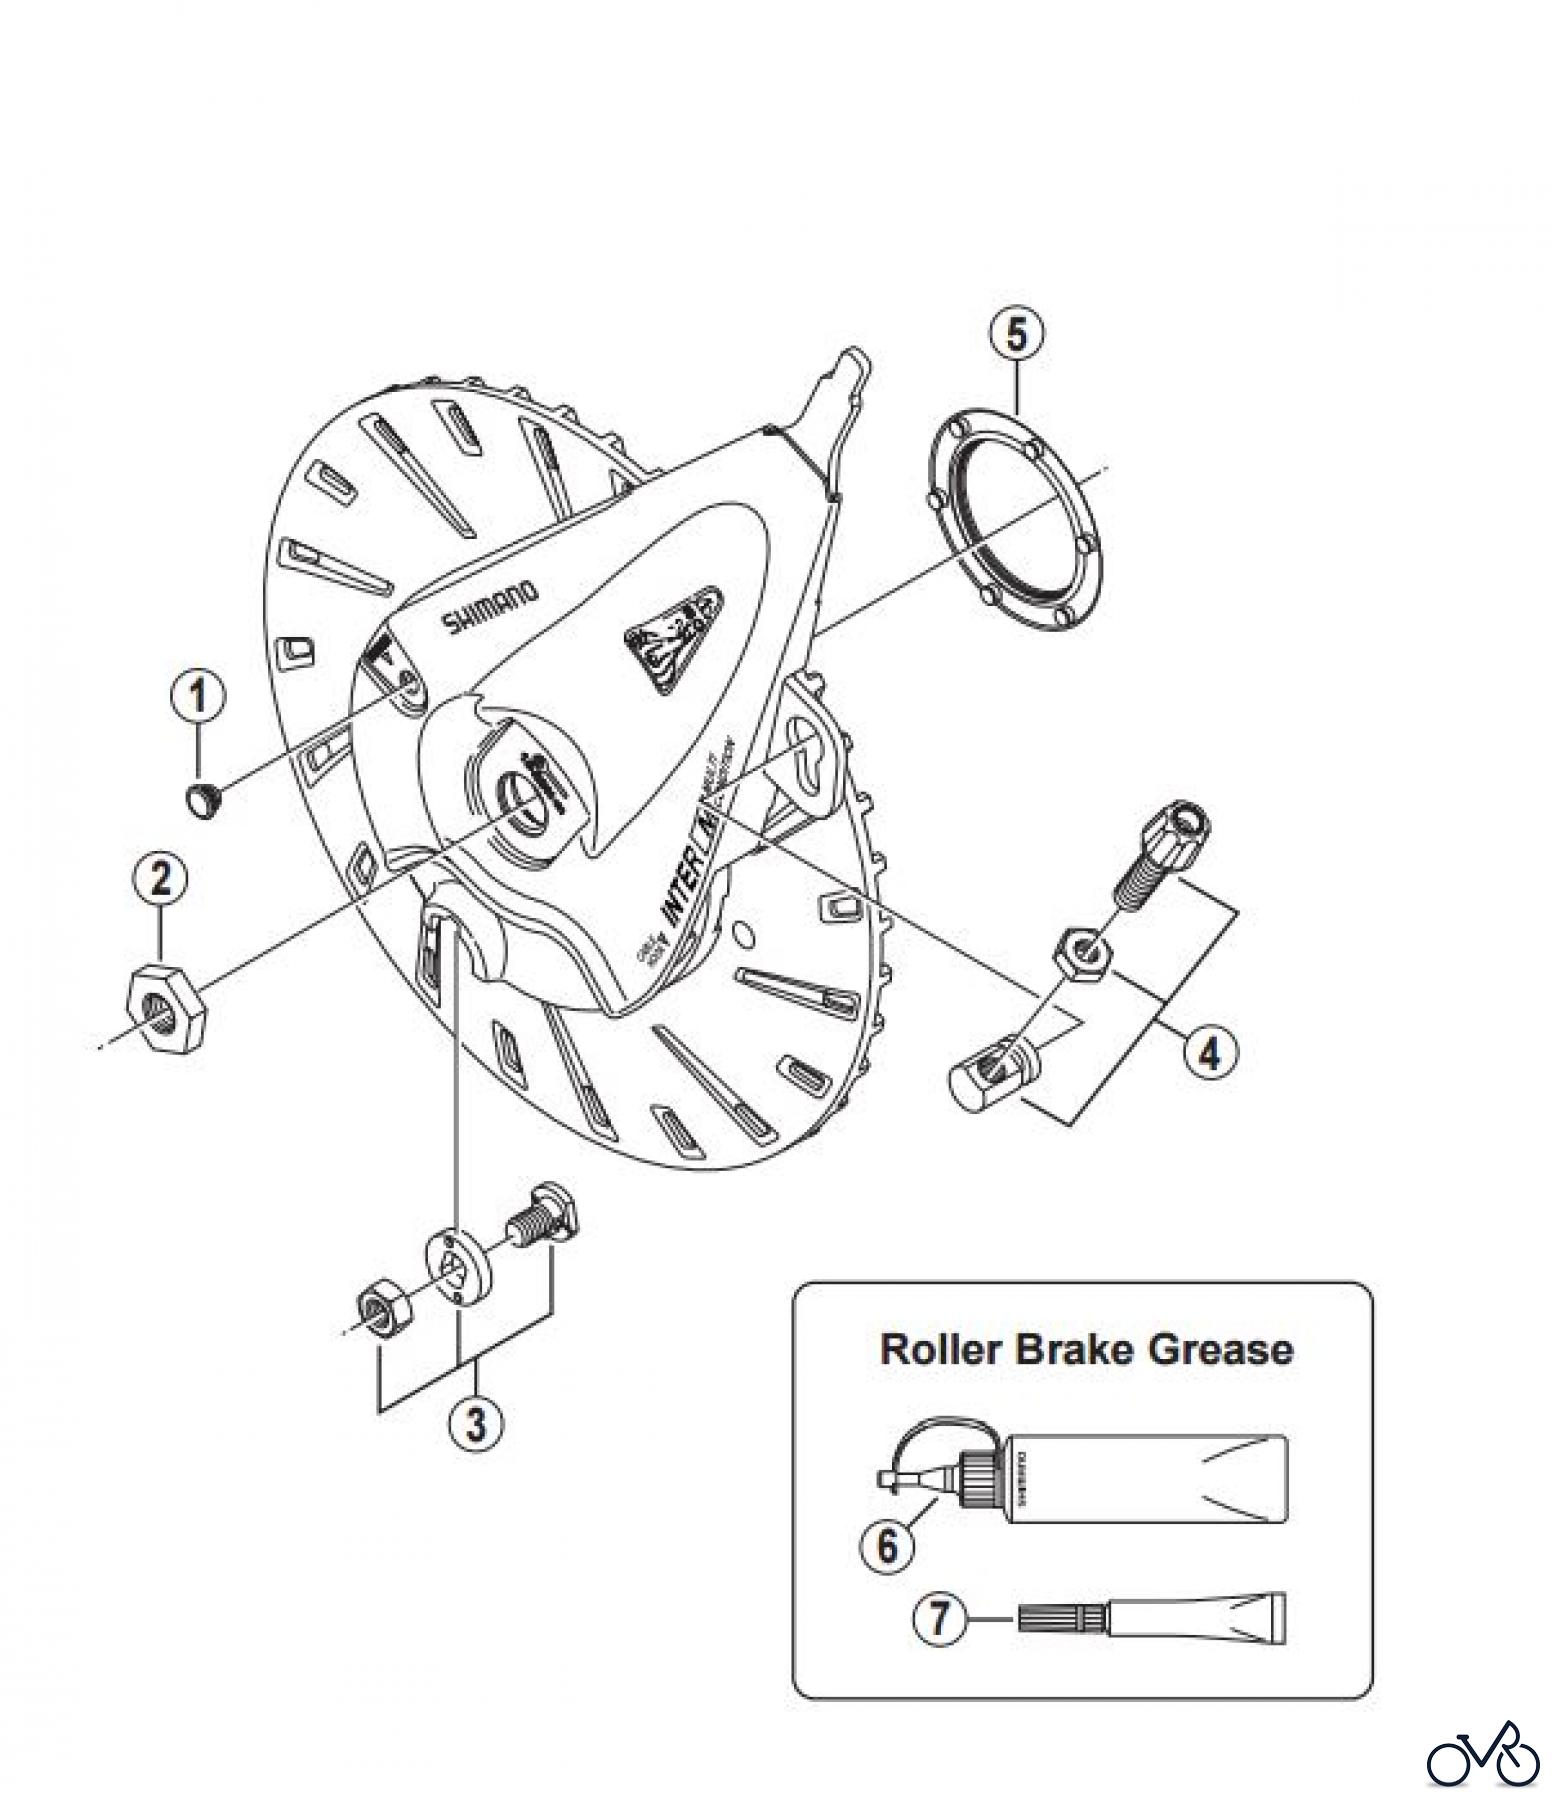  Shimano BR Brake - Bremse BR-IM81-F -3282 Roller Brake